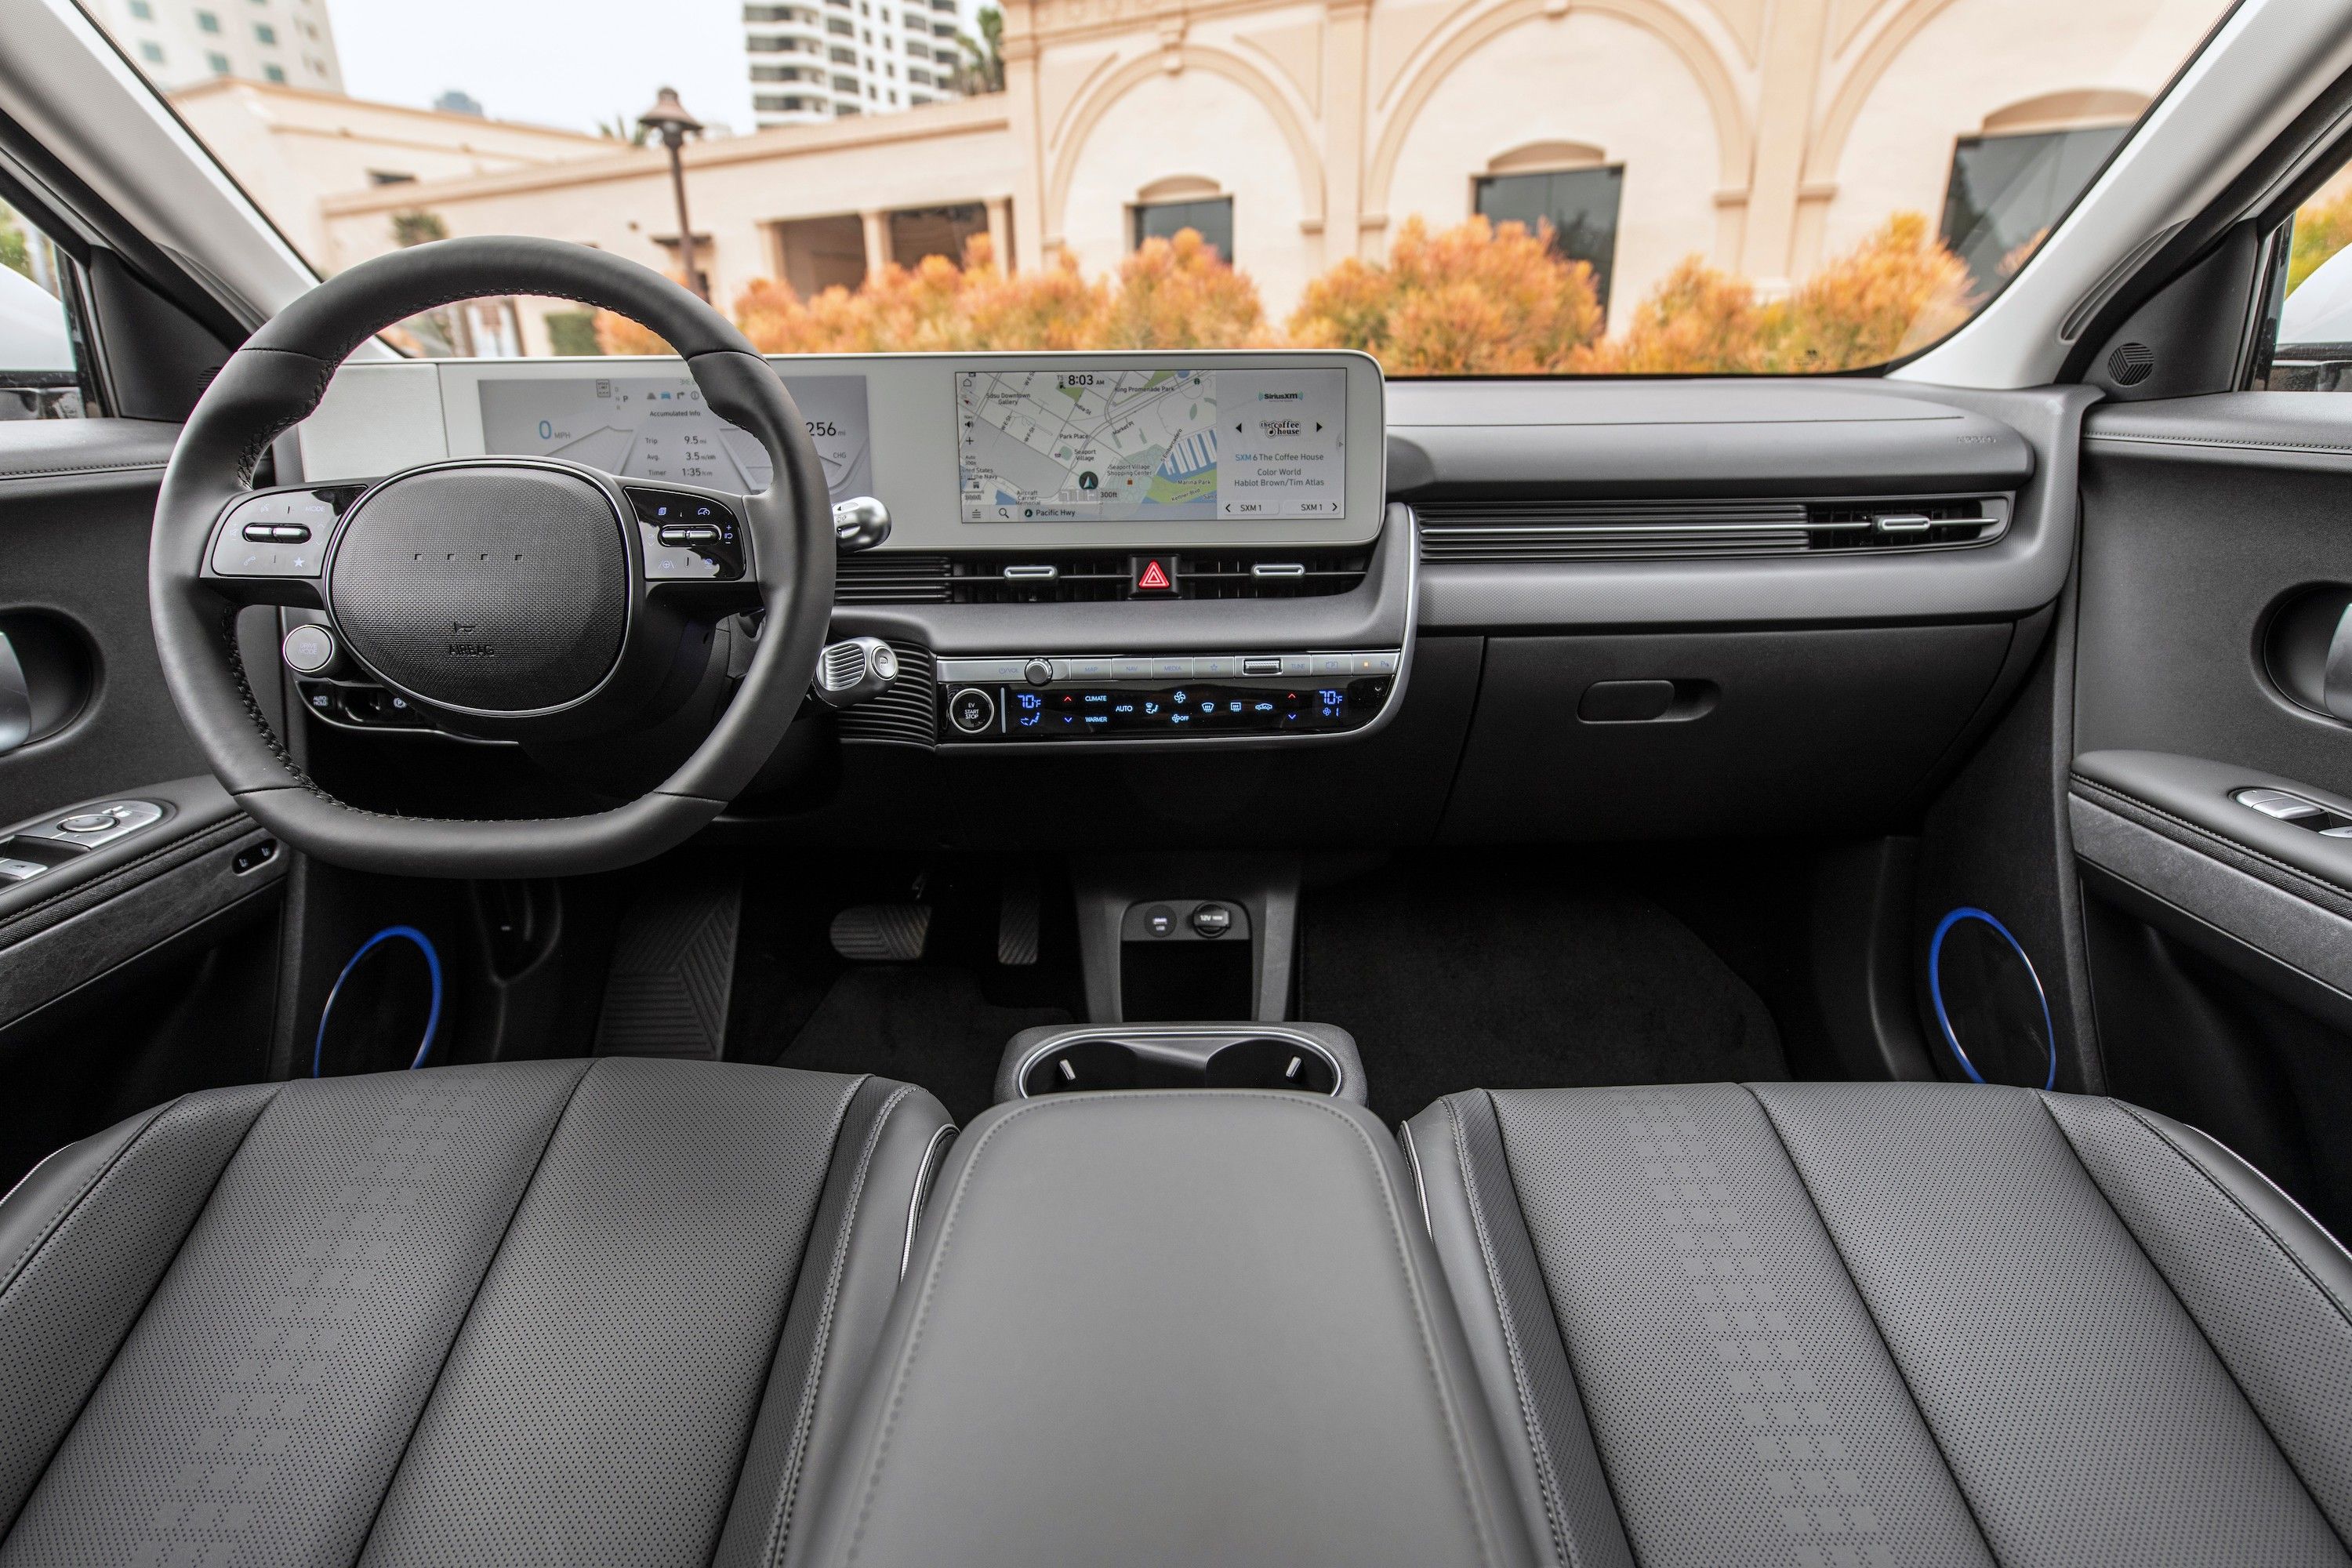 Hyundai previews Ioniq 5 interior ahead of debut